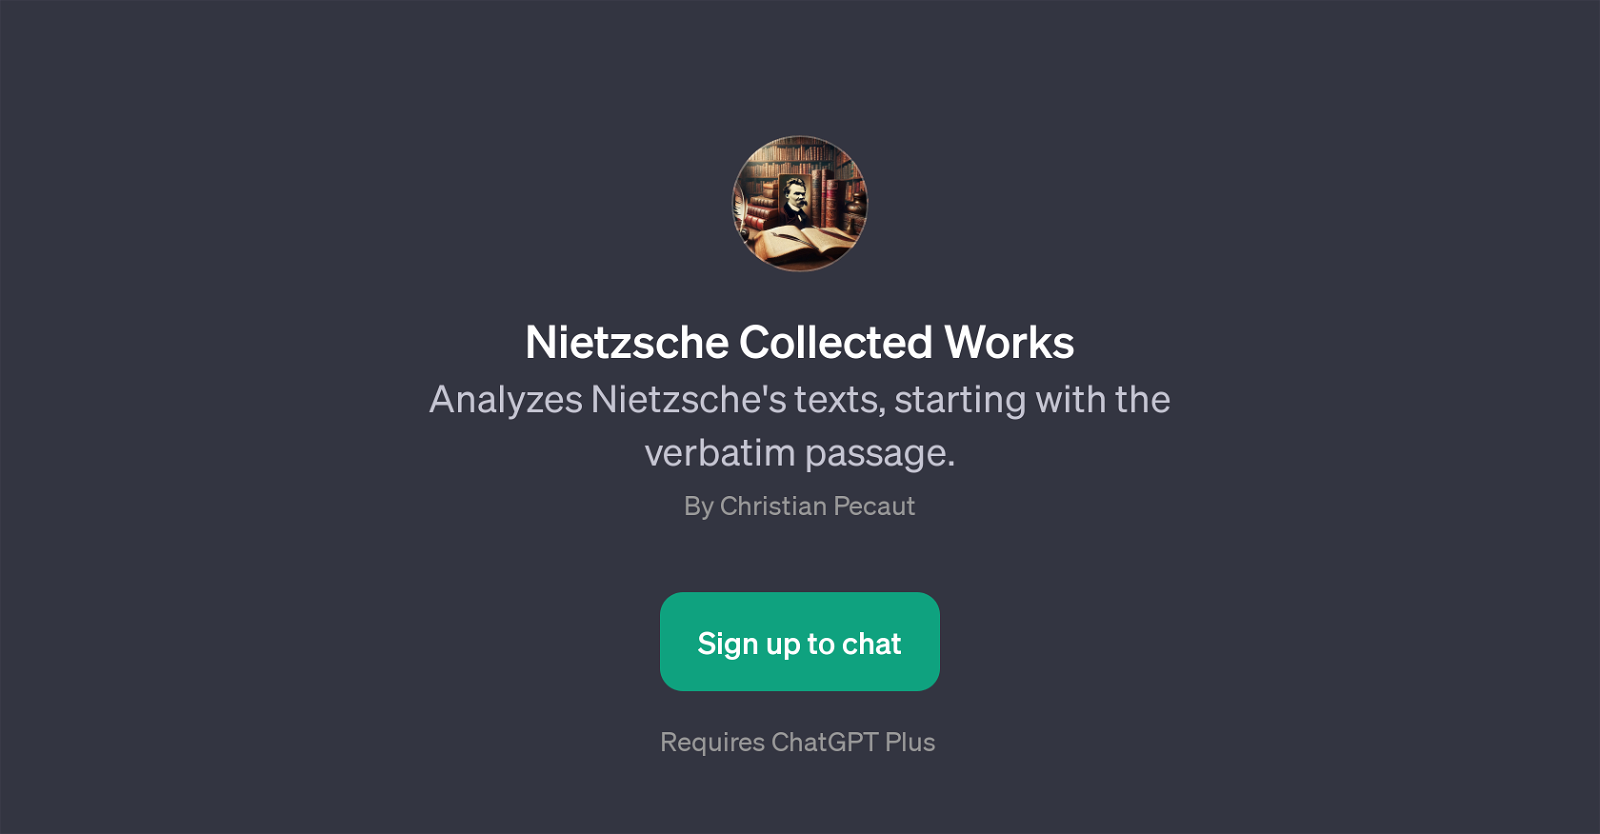 Nietzsche Collected Works website